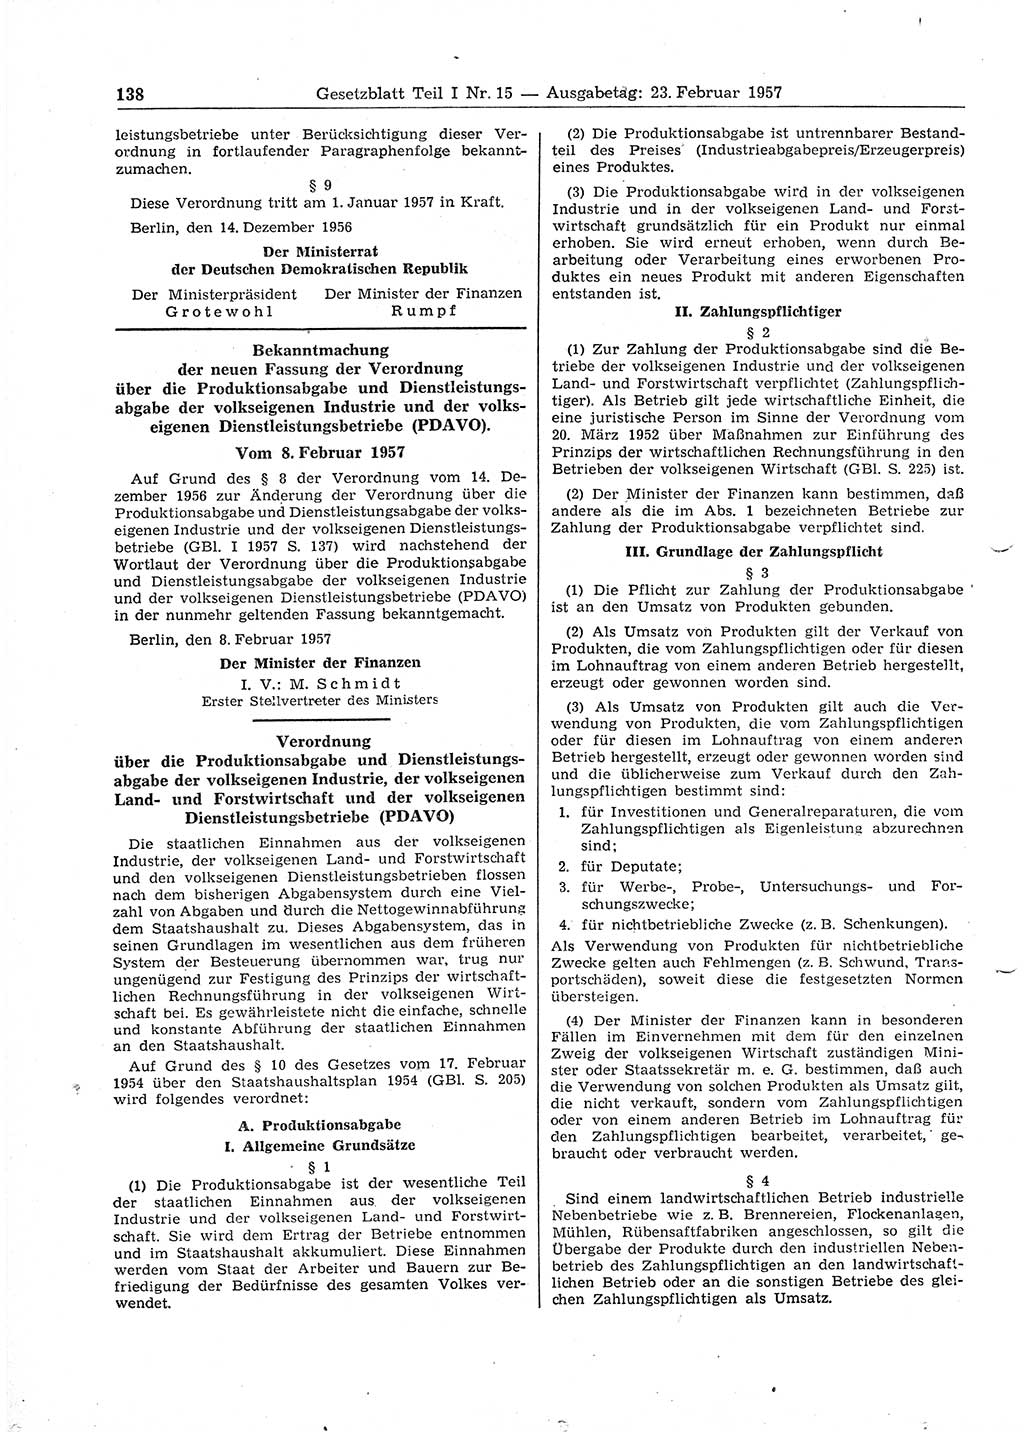 Gesetzblatt (GBl.) der Deutschen Demokratischen Republik (DDR) Teil Ⅰ 1957, Seite 138 (GBl. DDR Ⅰ 1957, S. 138)